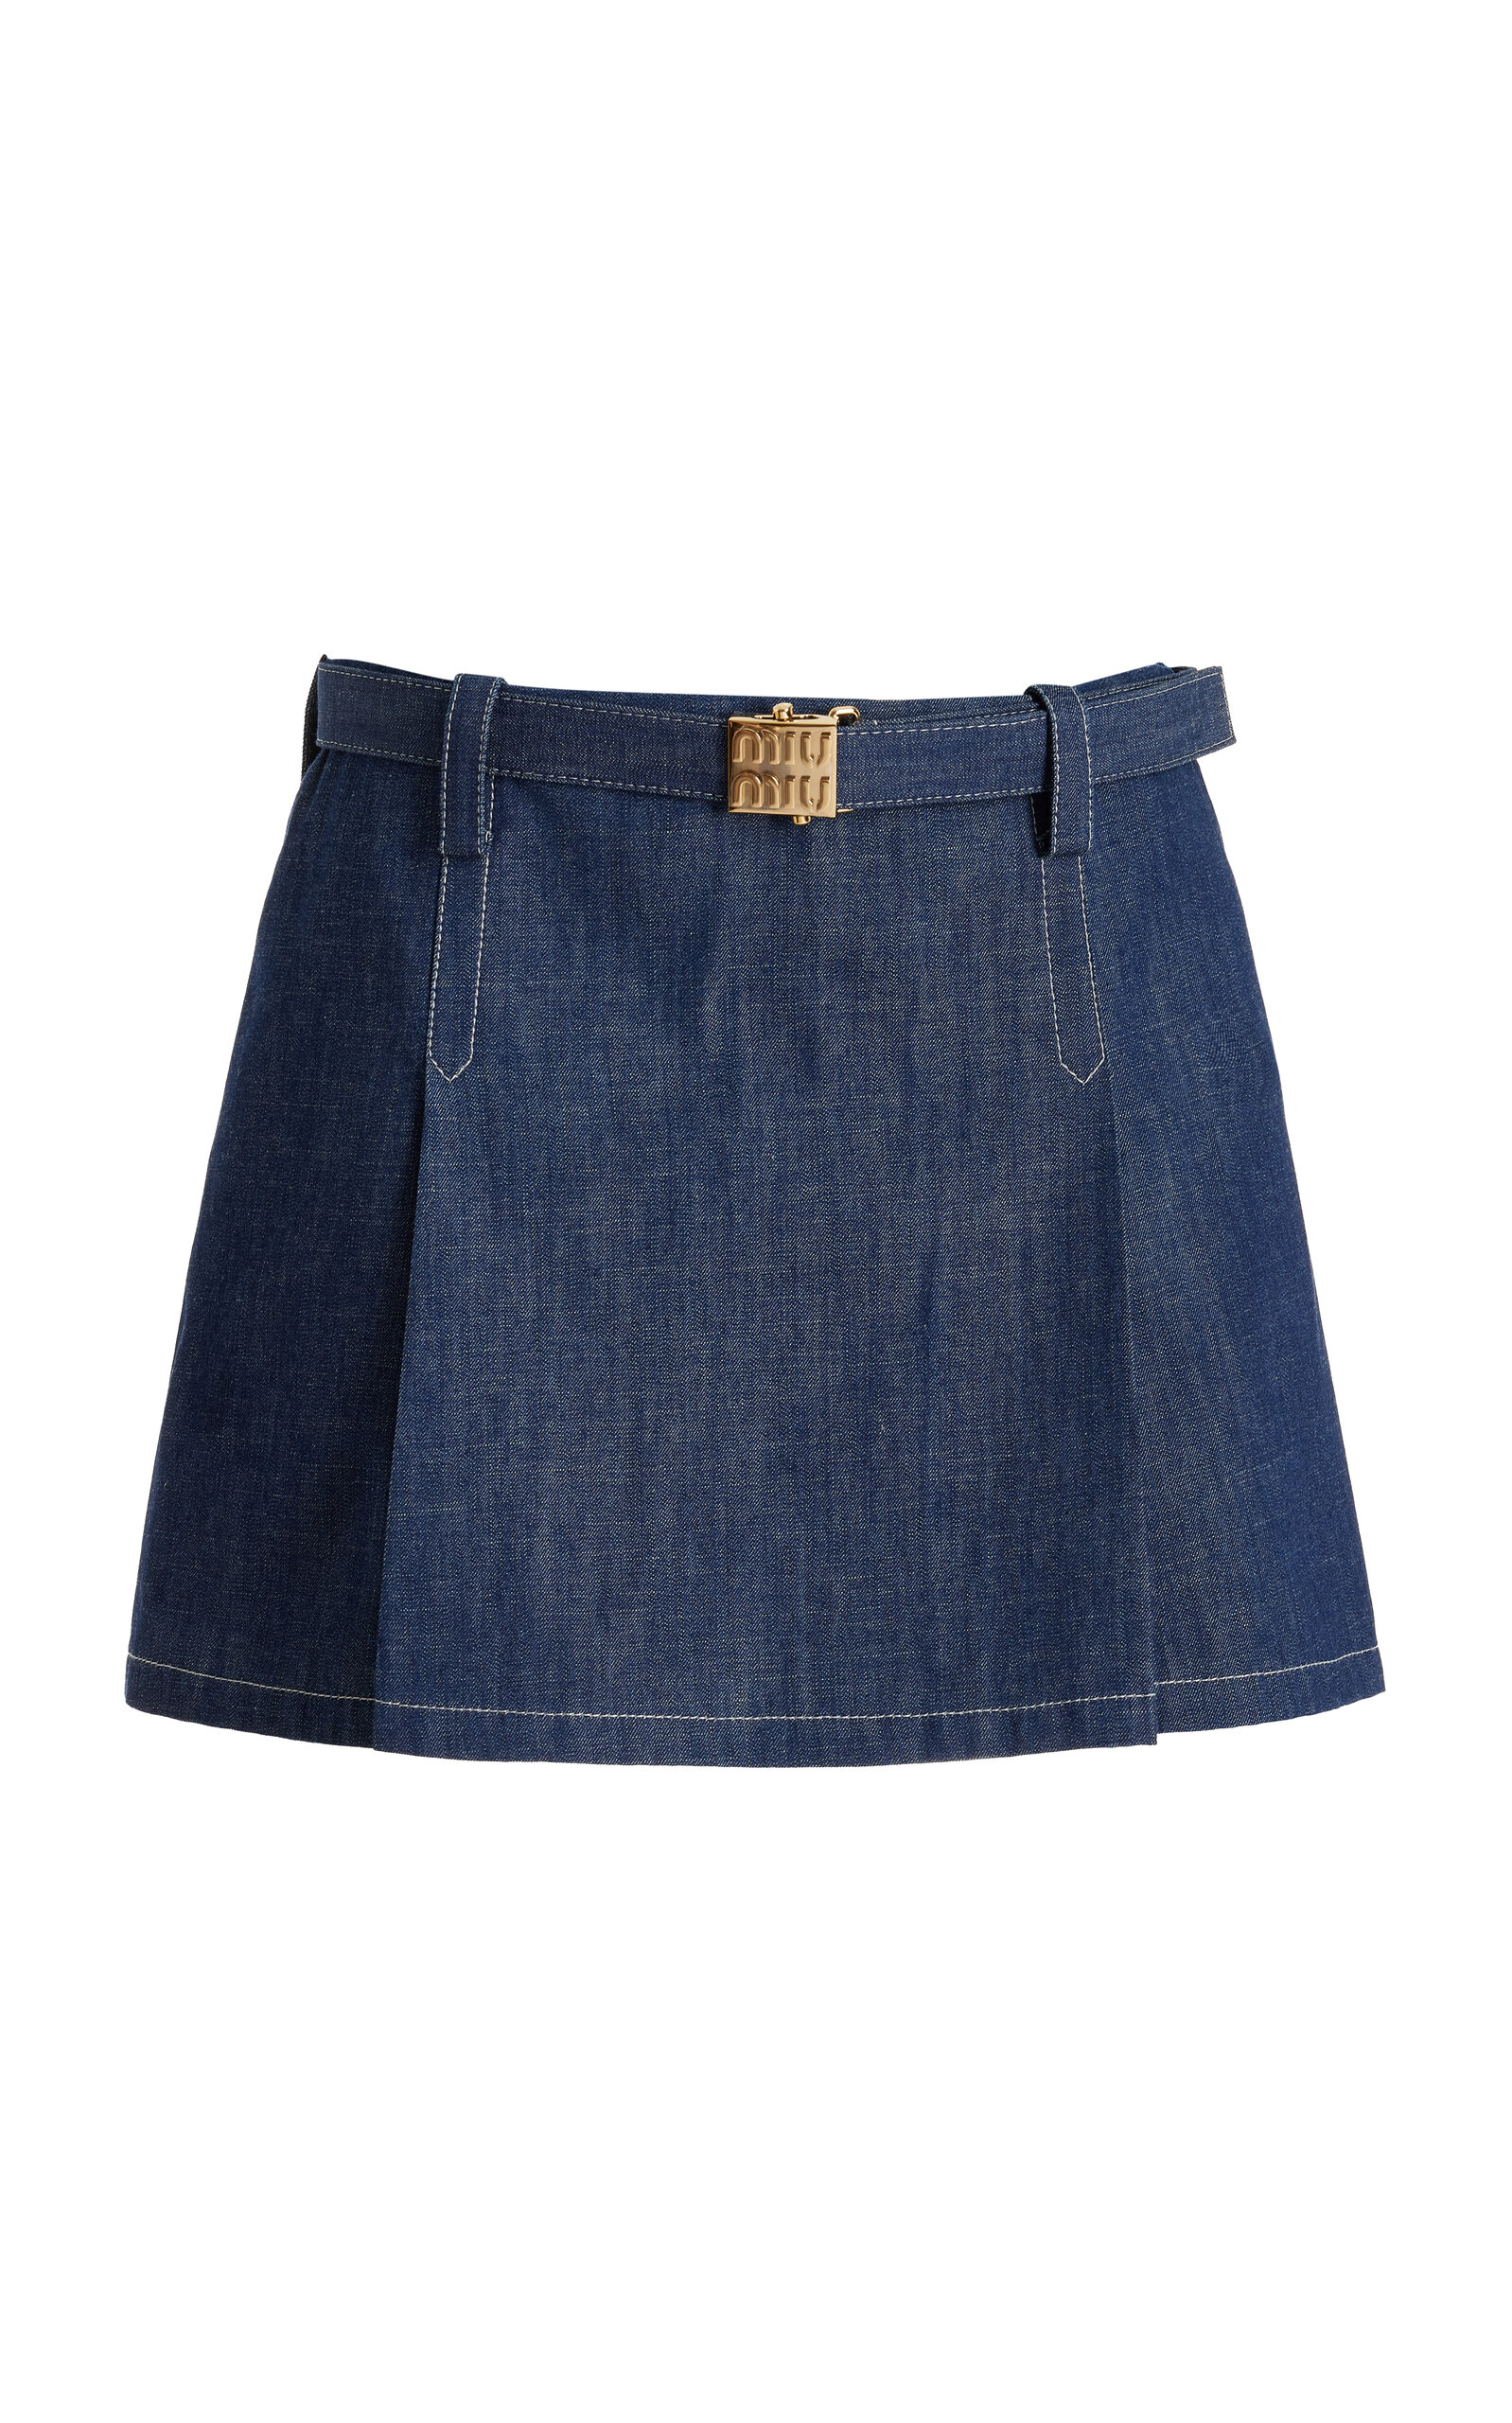 Miu Miu - Raw-Denim Mini Skirt - Medium Wash - IT 42 - Moda Operandi